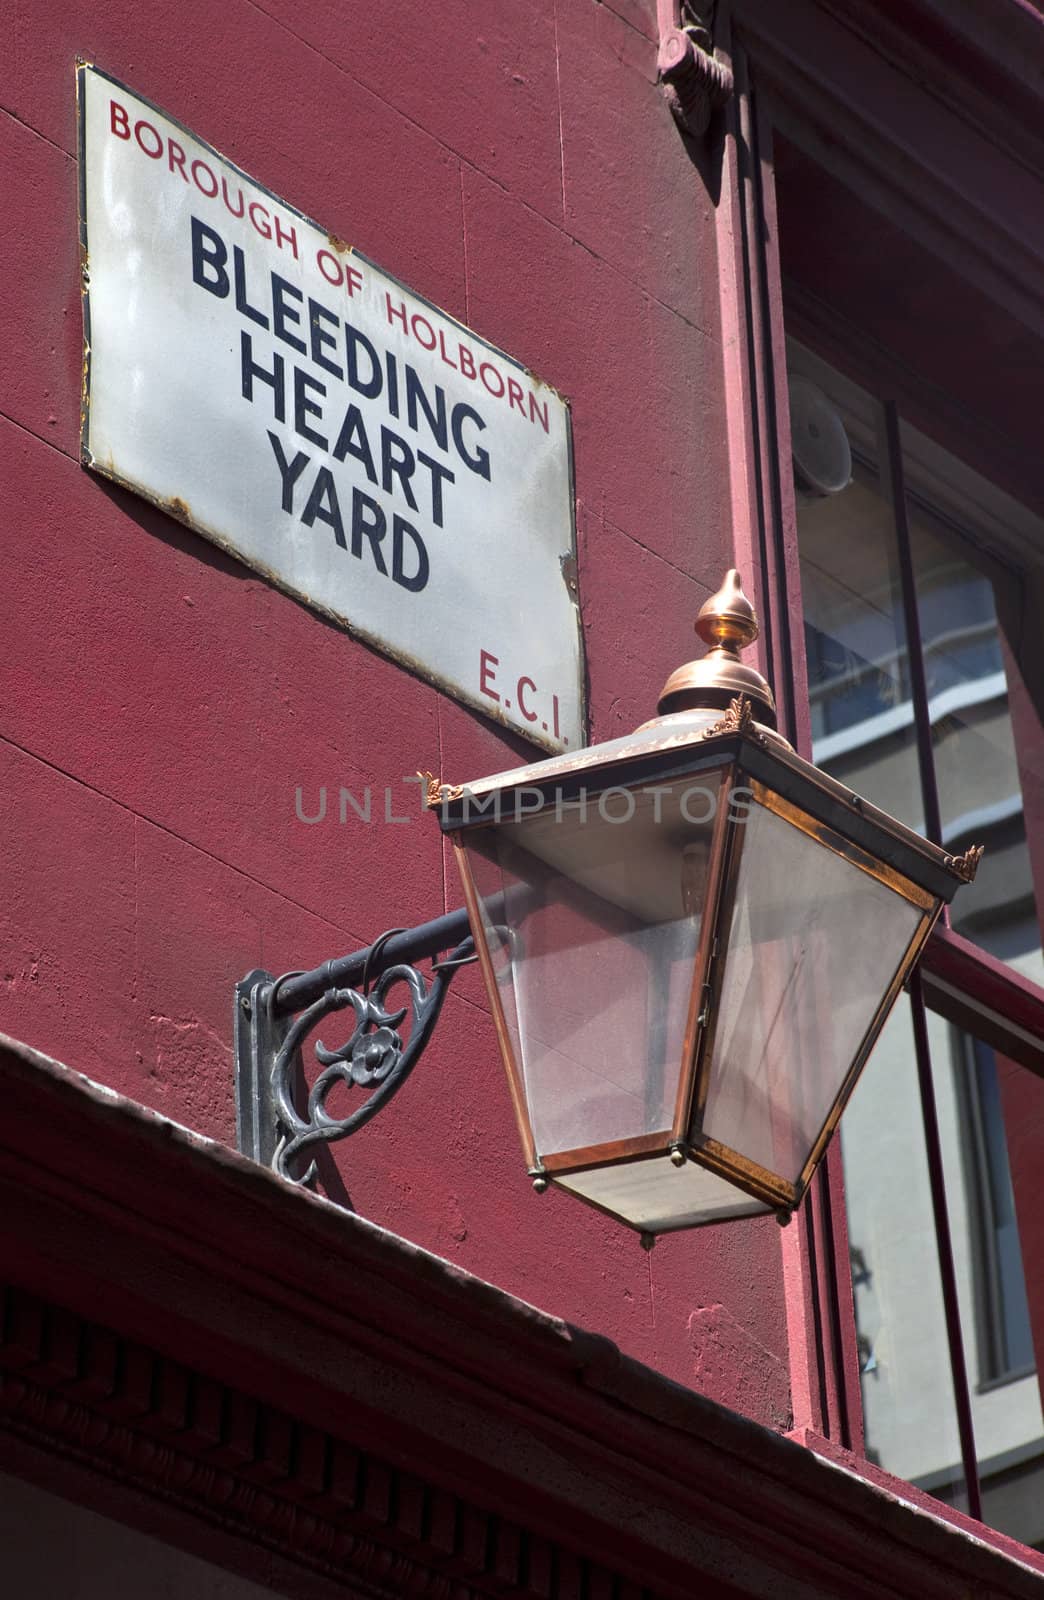 The street sign for Bleeding Heart Yard in London.  Bleeding Hart Yard was immortalised in Charles Dickens' novel 'Little Dorrit.